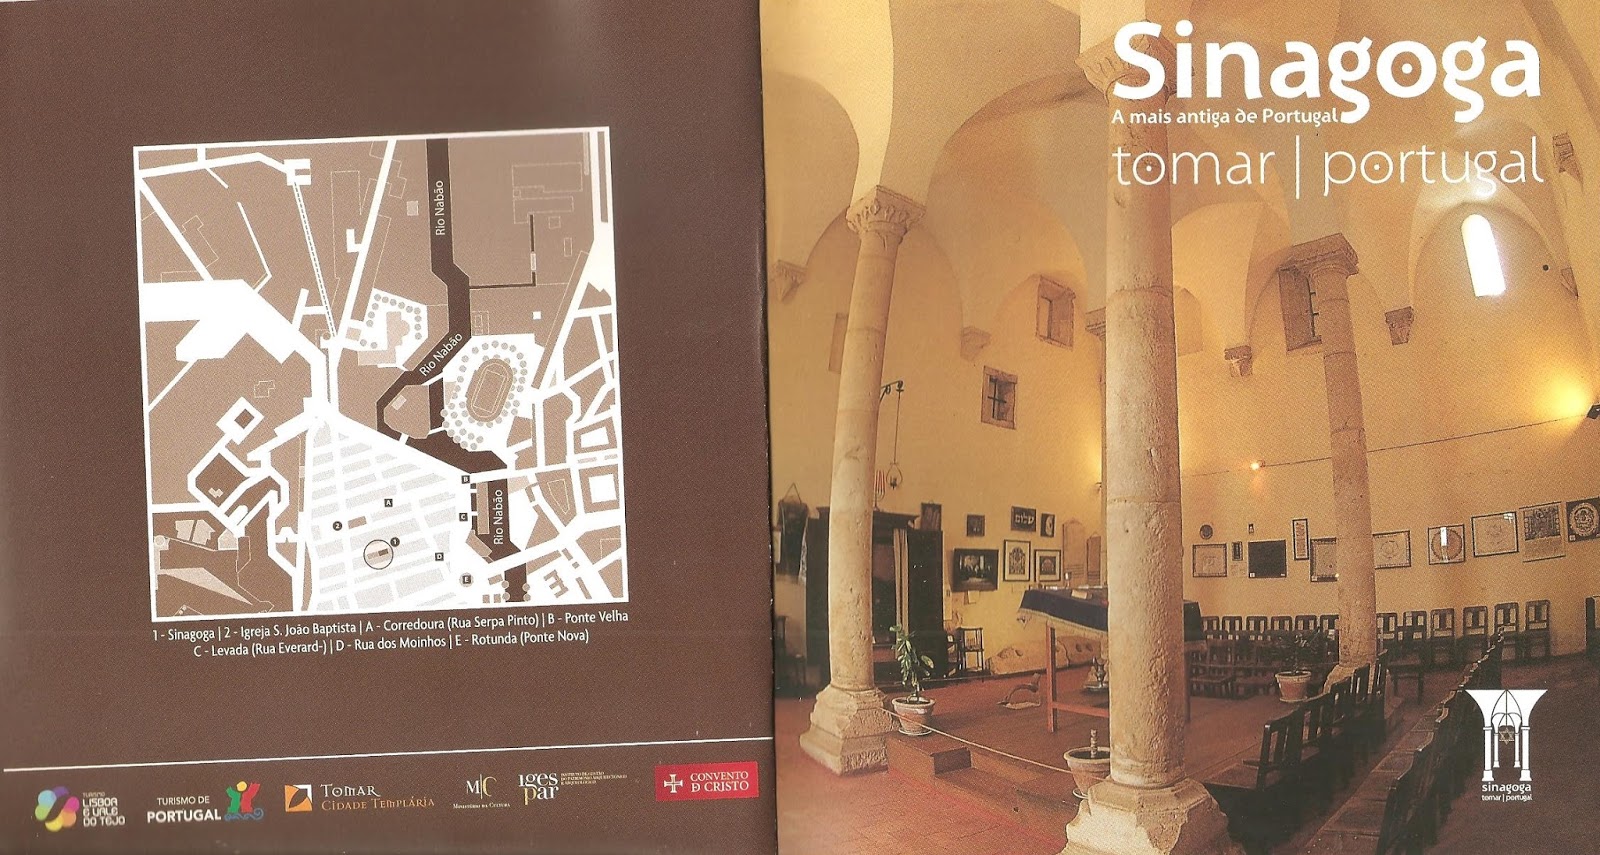 IPT: Aula aberta sobre a Sinagoga de Tomar e Museu Luso Hebraico